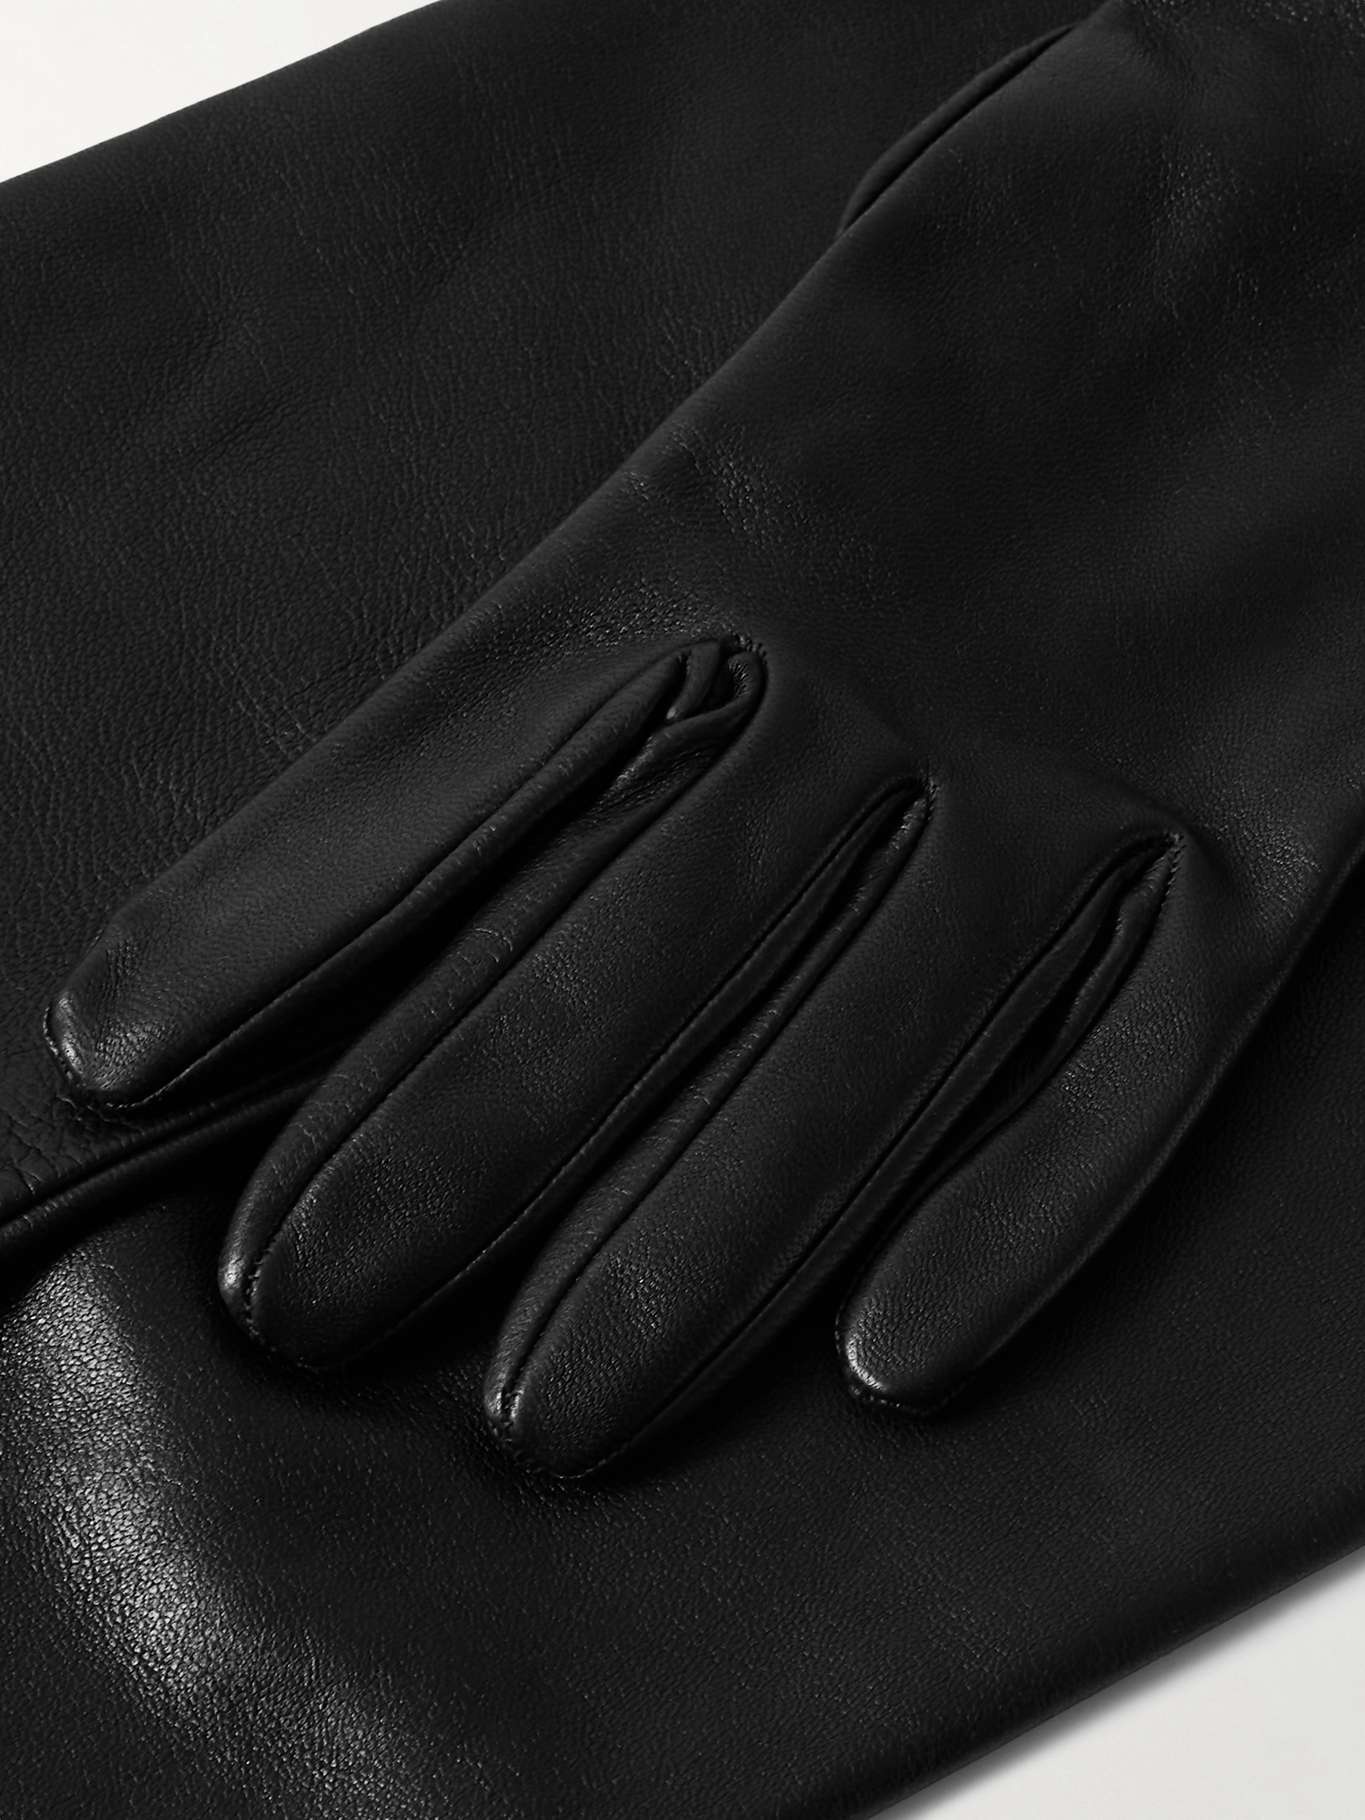 Simon leather gloves - 3